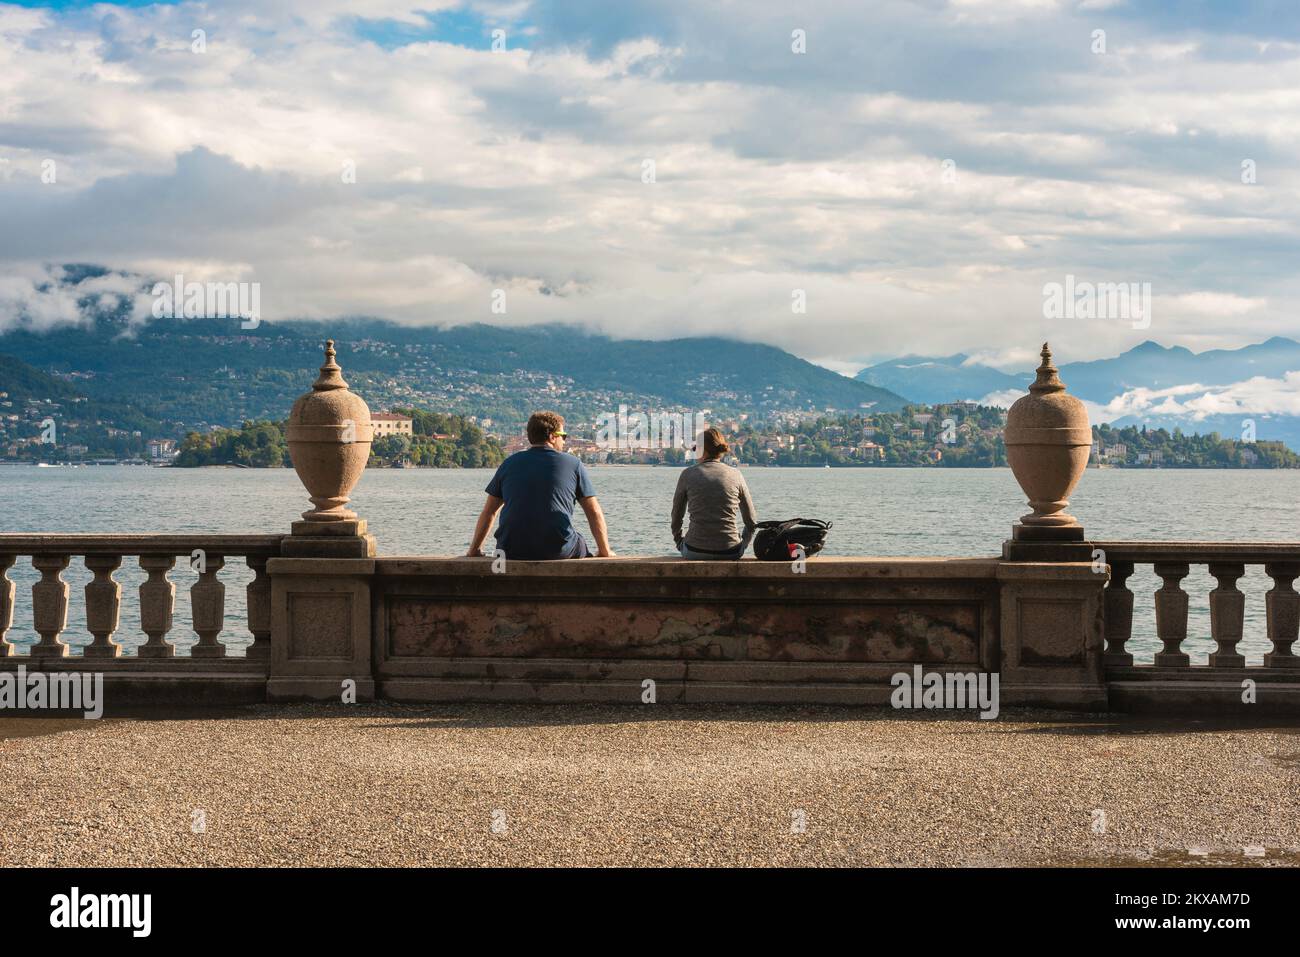 Pareja de viaje, vista trasera de un joven y una mujer sentados juntos en los terrenos del Palazzo Borromeo, Isola Bella, Lago Maggiore, Italia, Europa Foto de stock